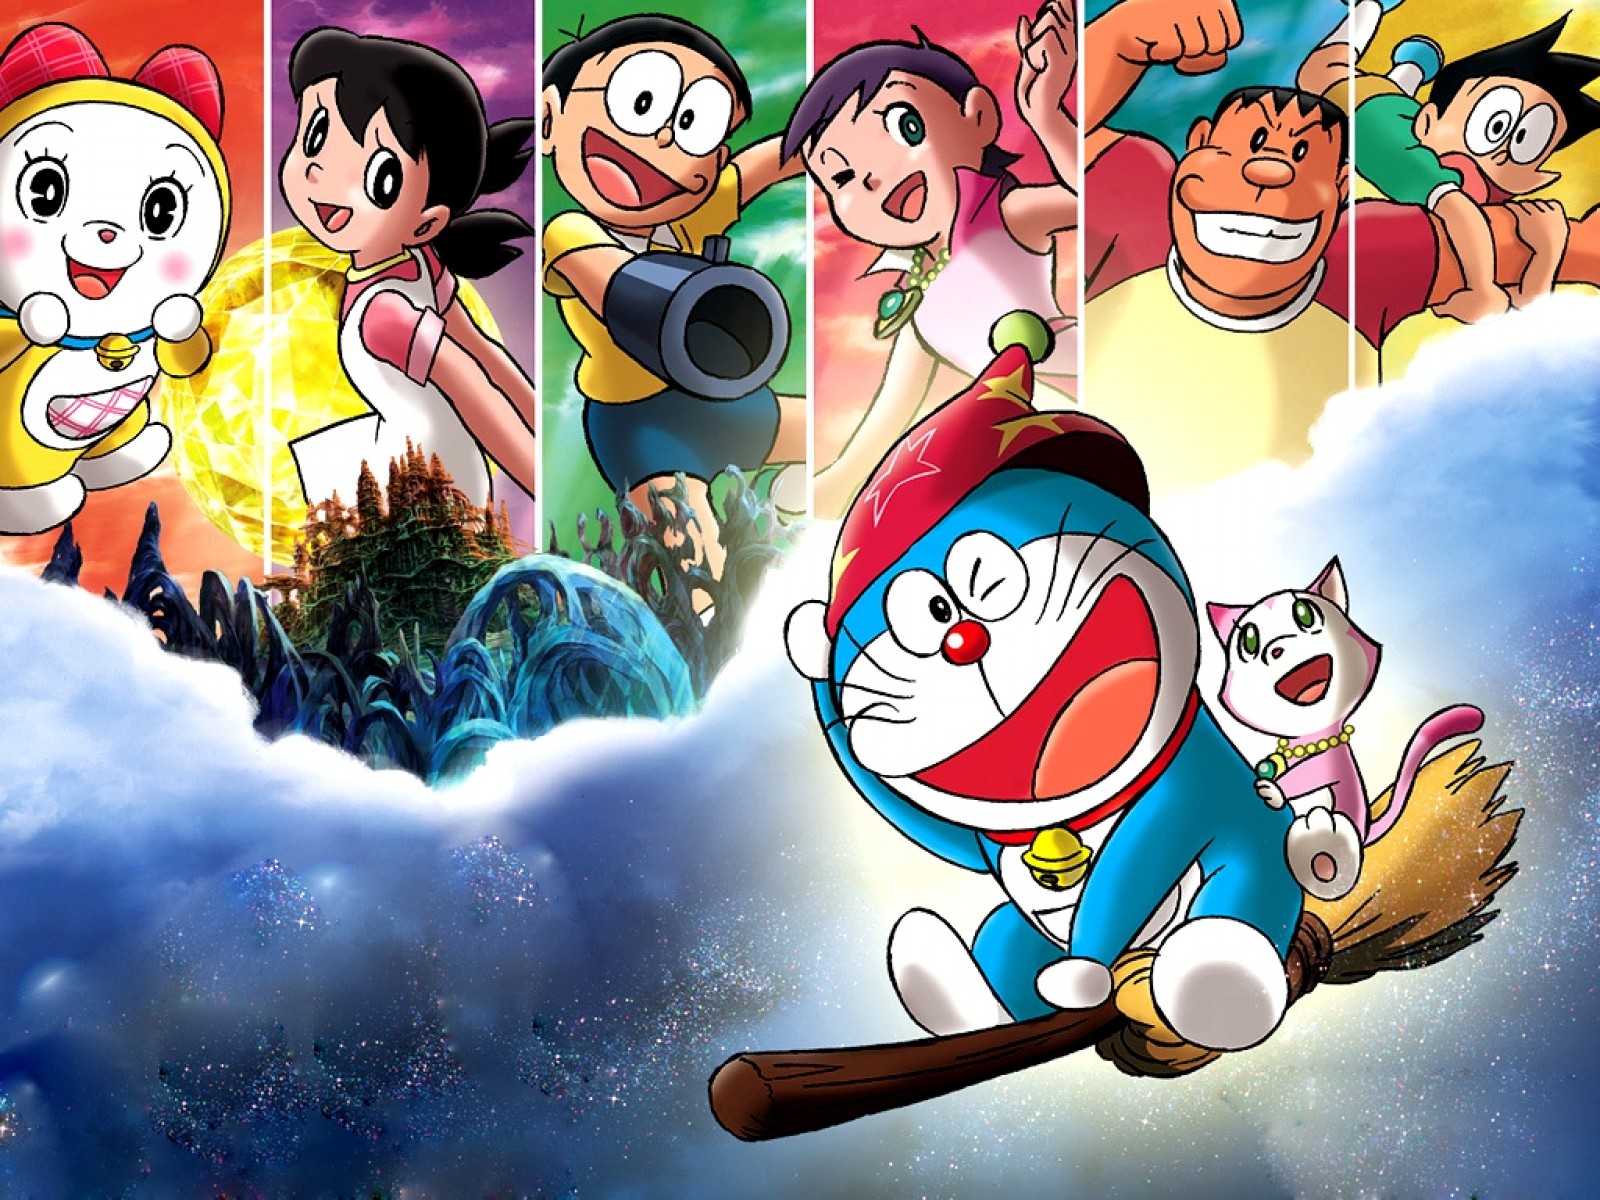 Doraemon Wallpaper for Desktop: Có rất nhiều lợi ích khi sử dụng hình nền Doraemon trên Desktop như tạo cảm giác thoải mái, giảm căng thẳng khi làm việc, trau dồi sự sáng tạo, khích lệ tinh thần vui tươi... Nếu bạn là một fan của Doraemon, đừng bỏ lỡ cơ hội sở hữu những hình nền đầy màu sắc và đẹp mắt này.